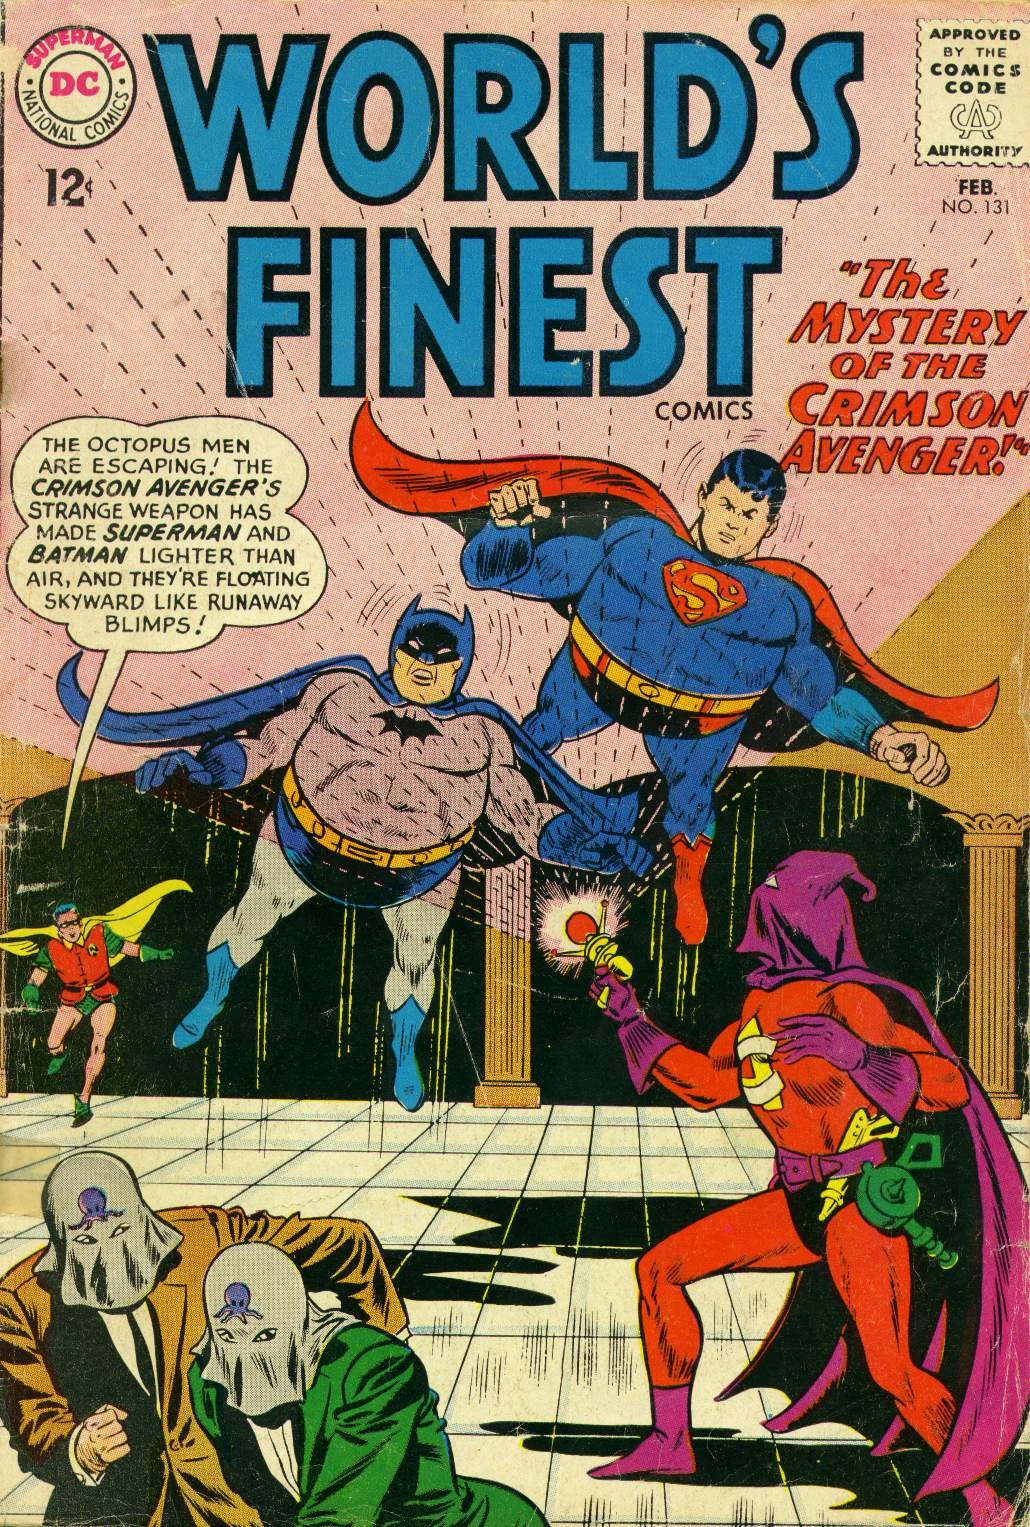 Portada de World's Finest 131 en la que vemos al nuevo Crimson Avenger con traje de supes y capucha violeta, apuntando a Superman y batman con una pistola que les convierte en muñecos hinchables. Mintras unos tipos con capuchas con pulpos huyen.